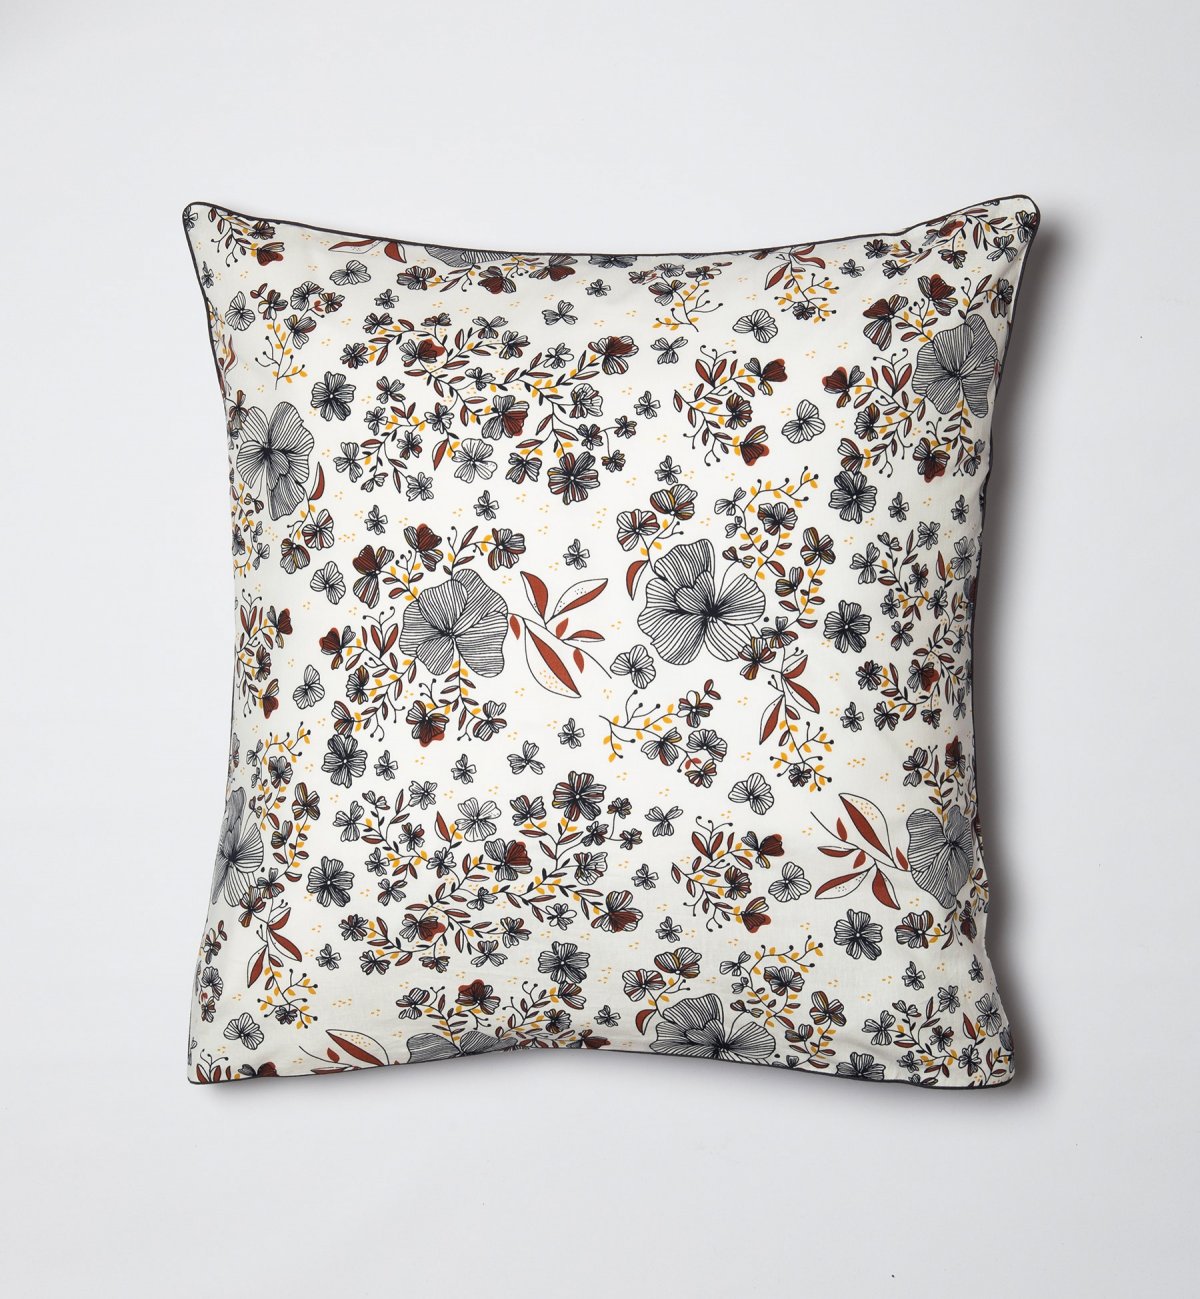 Collection de Linge de lit - Bébé - choix de taille - Coton Bio - motifs flora